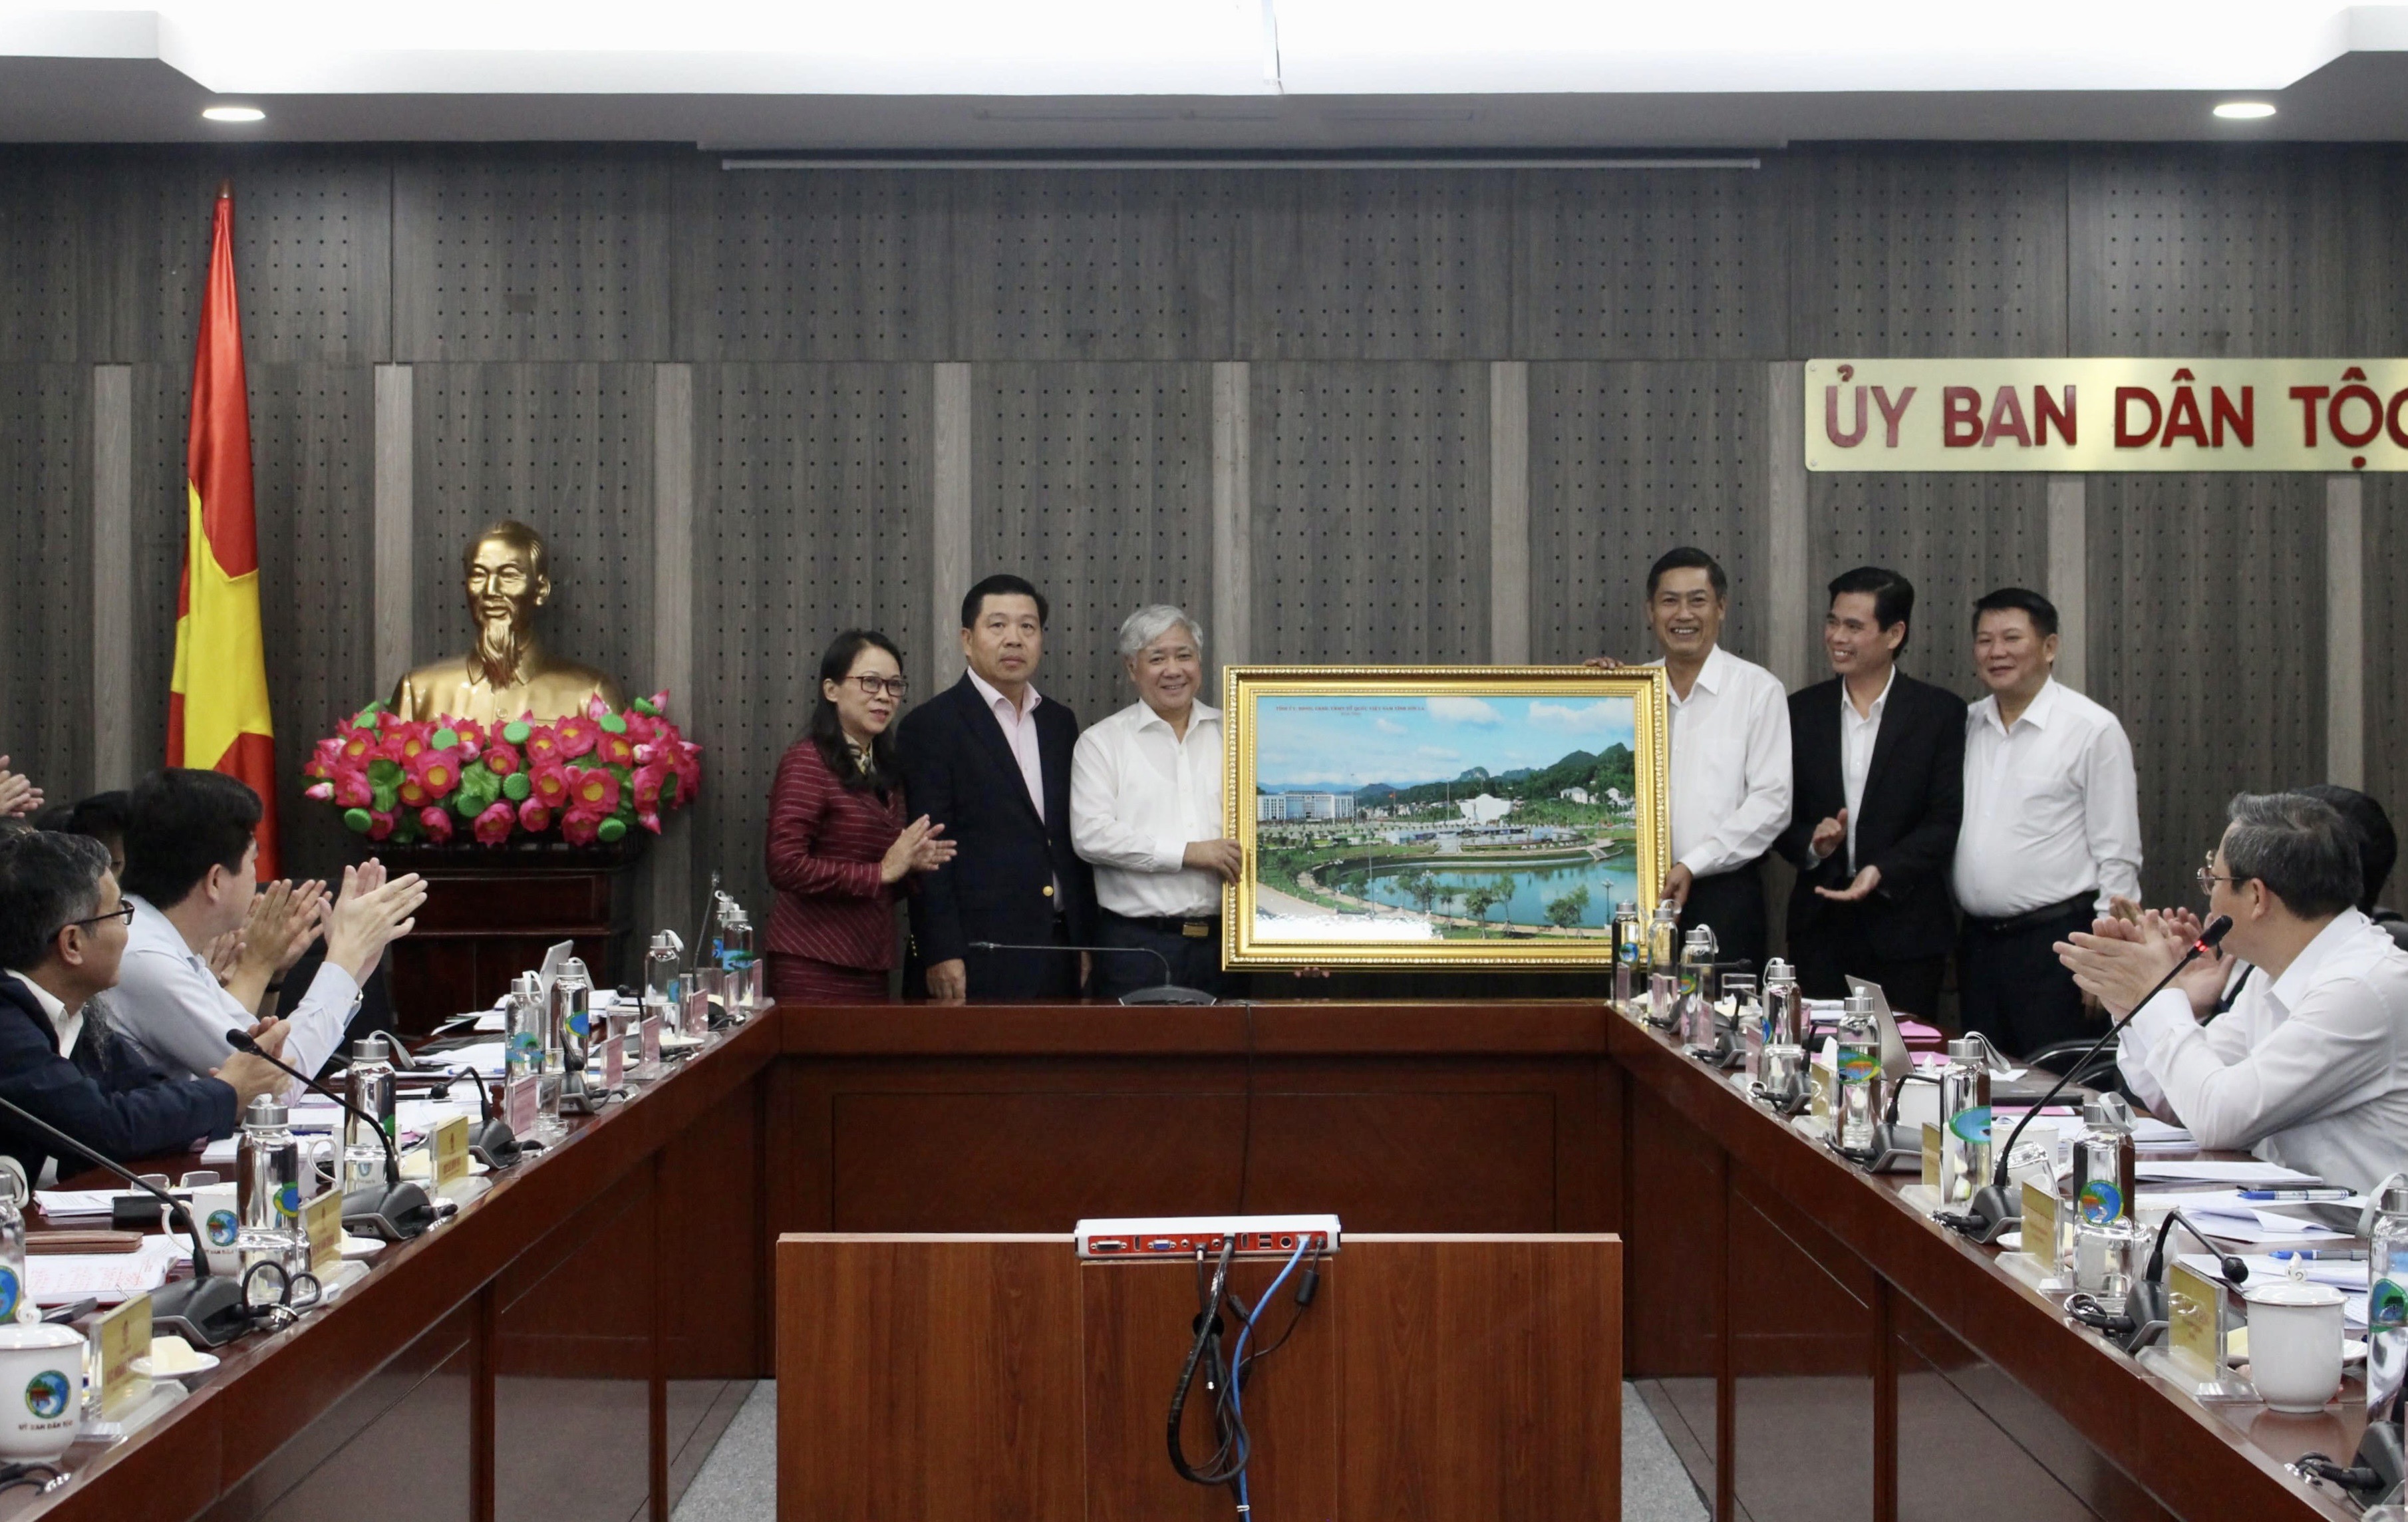 Tỉnh Sơn La tặng quà lưu niệm cho Ủy ban Dân tộc